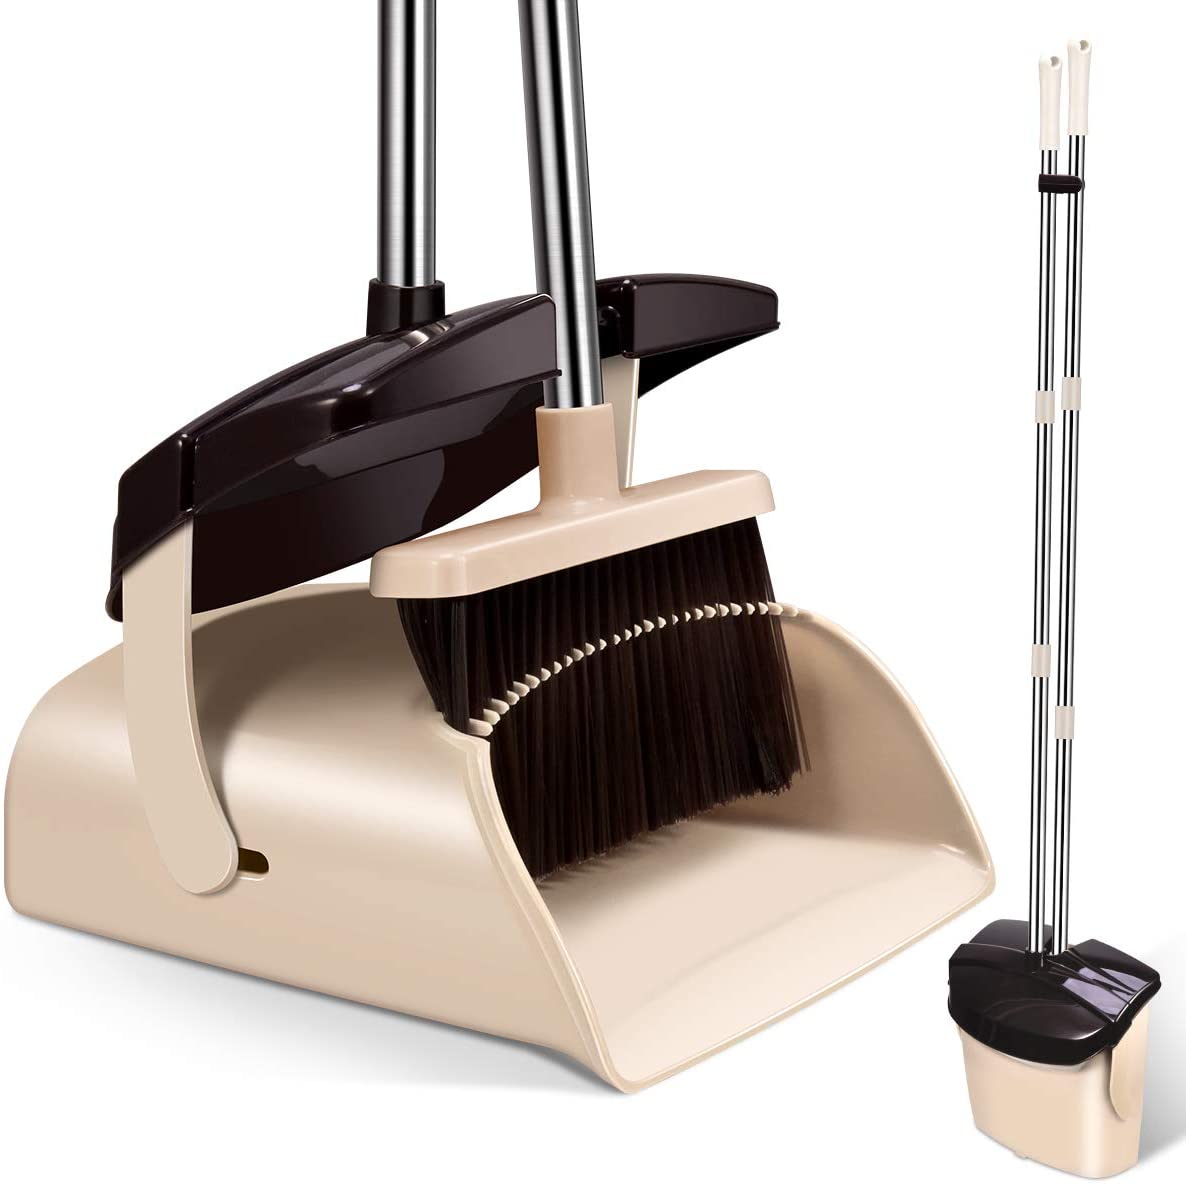 Mosuch Extendable Broom & Dustpan Set